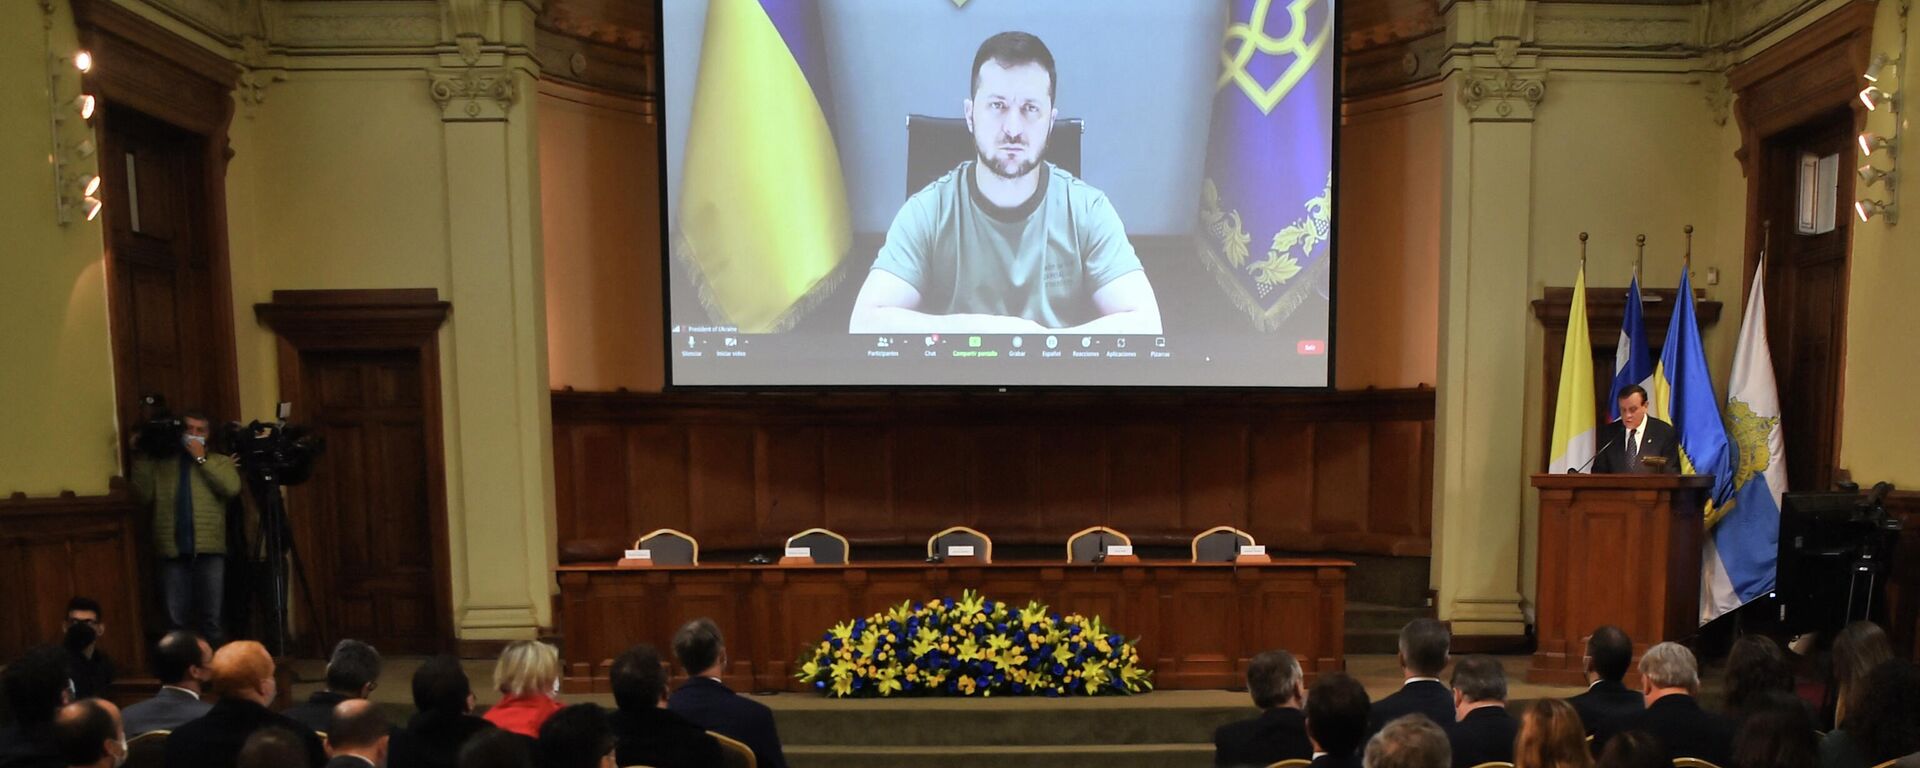 O presidente da Ucrânia, Vladimir Zelensky, fala durante uma videoconferência realizada na Universidad Católica, em Santiago, em 17 de agosto de 2022 - Sputnik Brasil, 1920, 17.08.2022